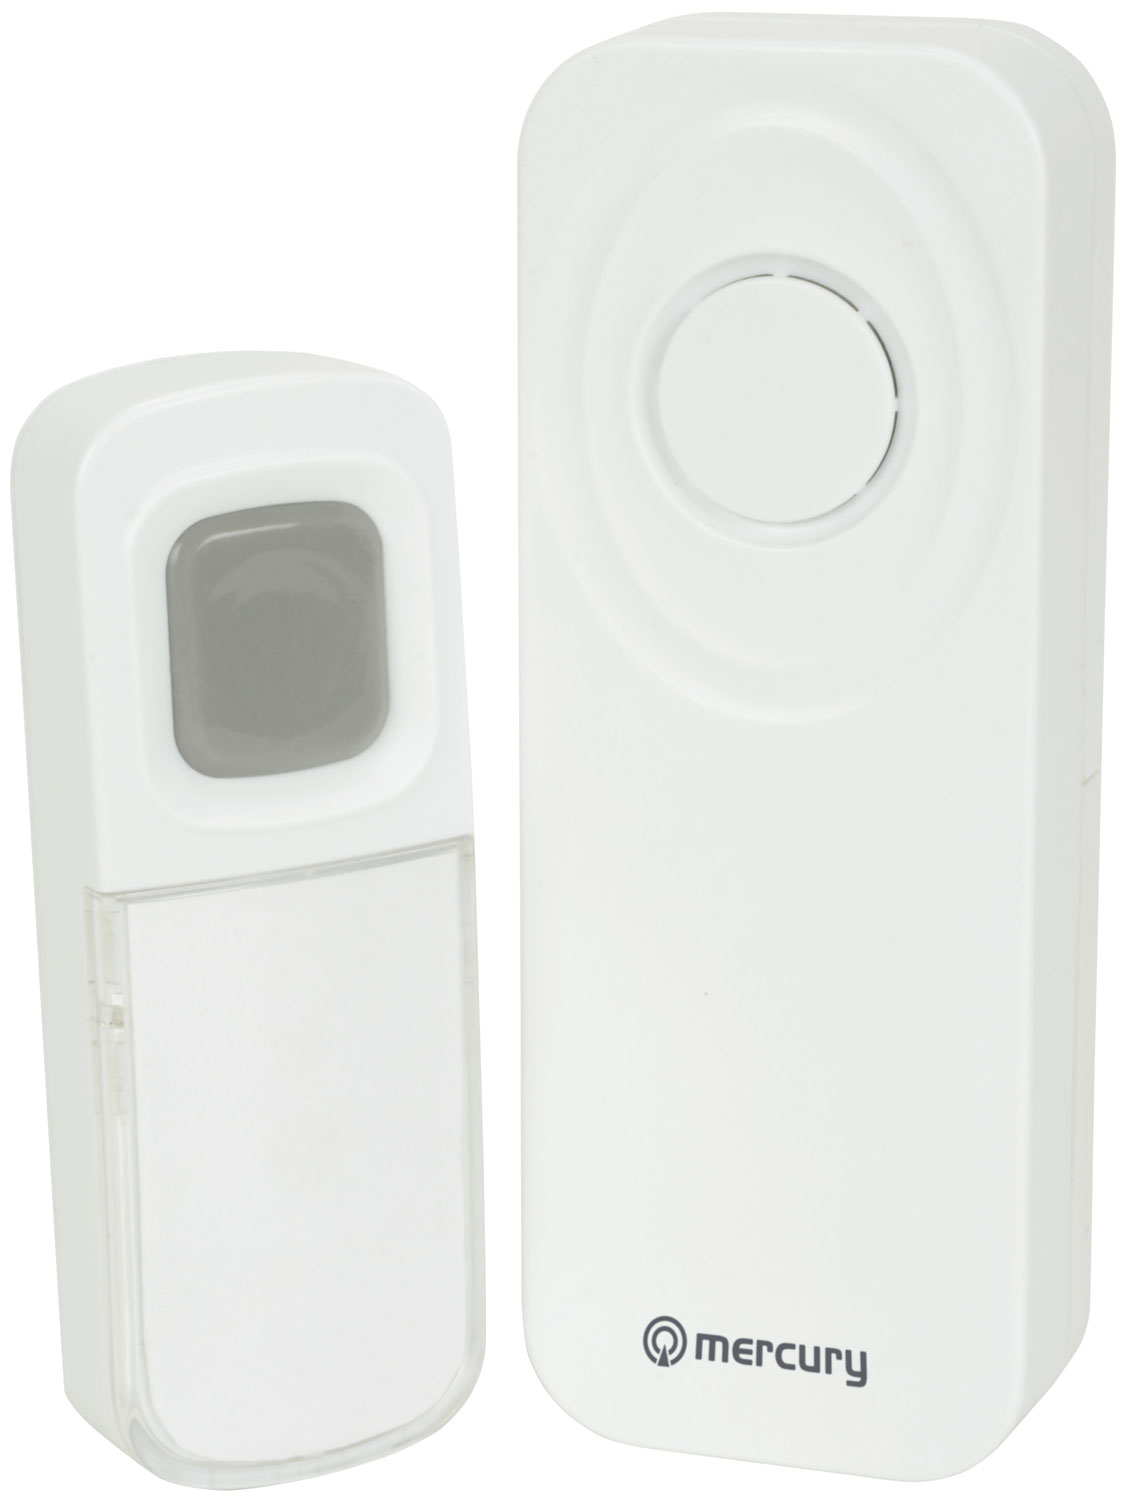 Wireless Waterproof Doorbell with Portable Chime Wireless Waterproof Doorbell White